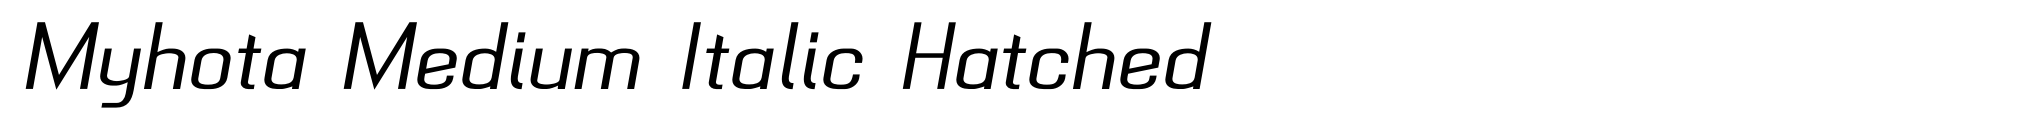 Myhota Medium Italic Hatched image